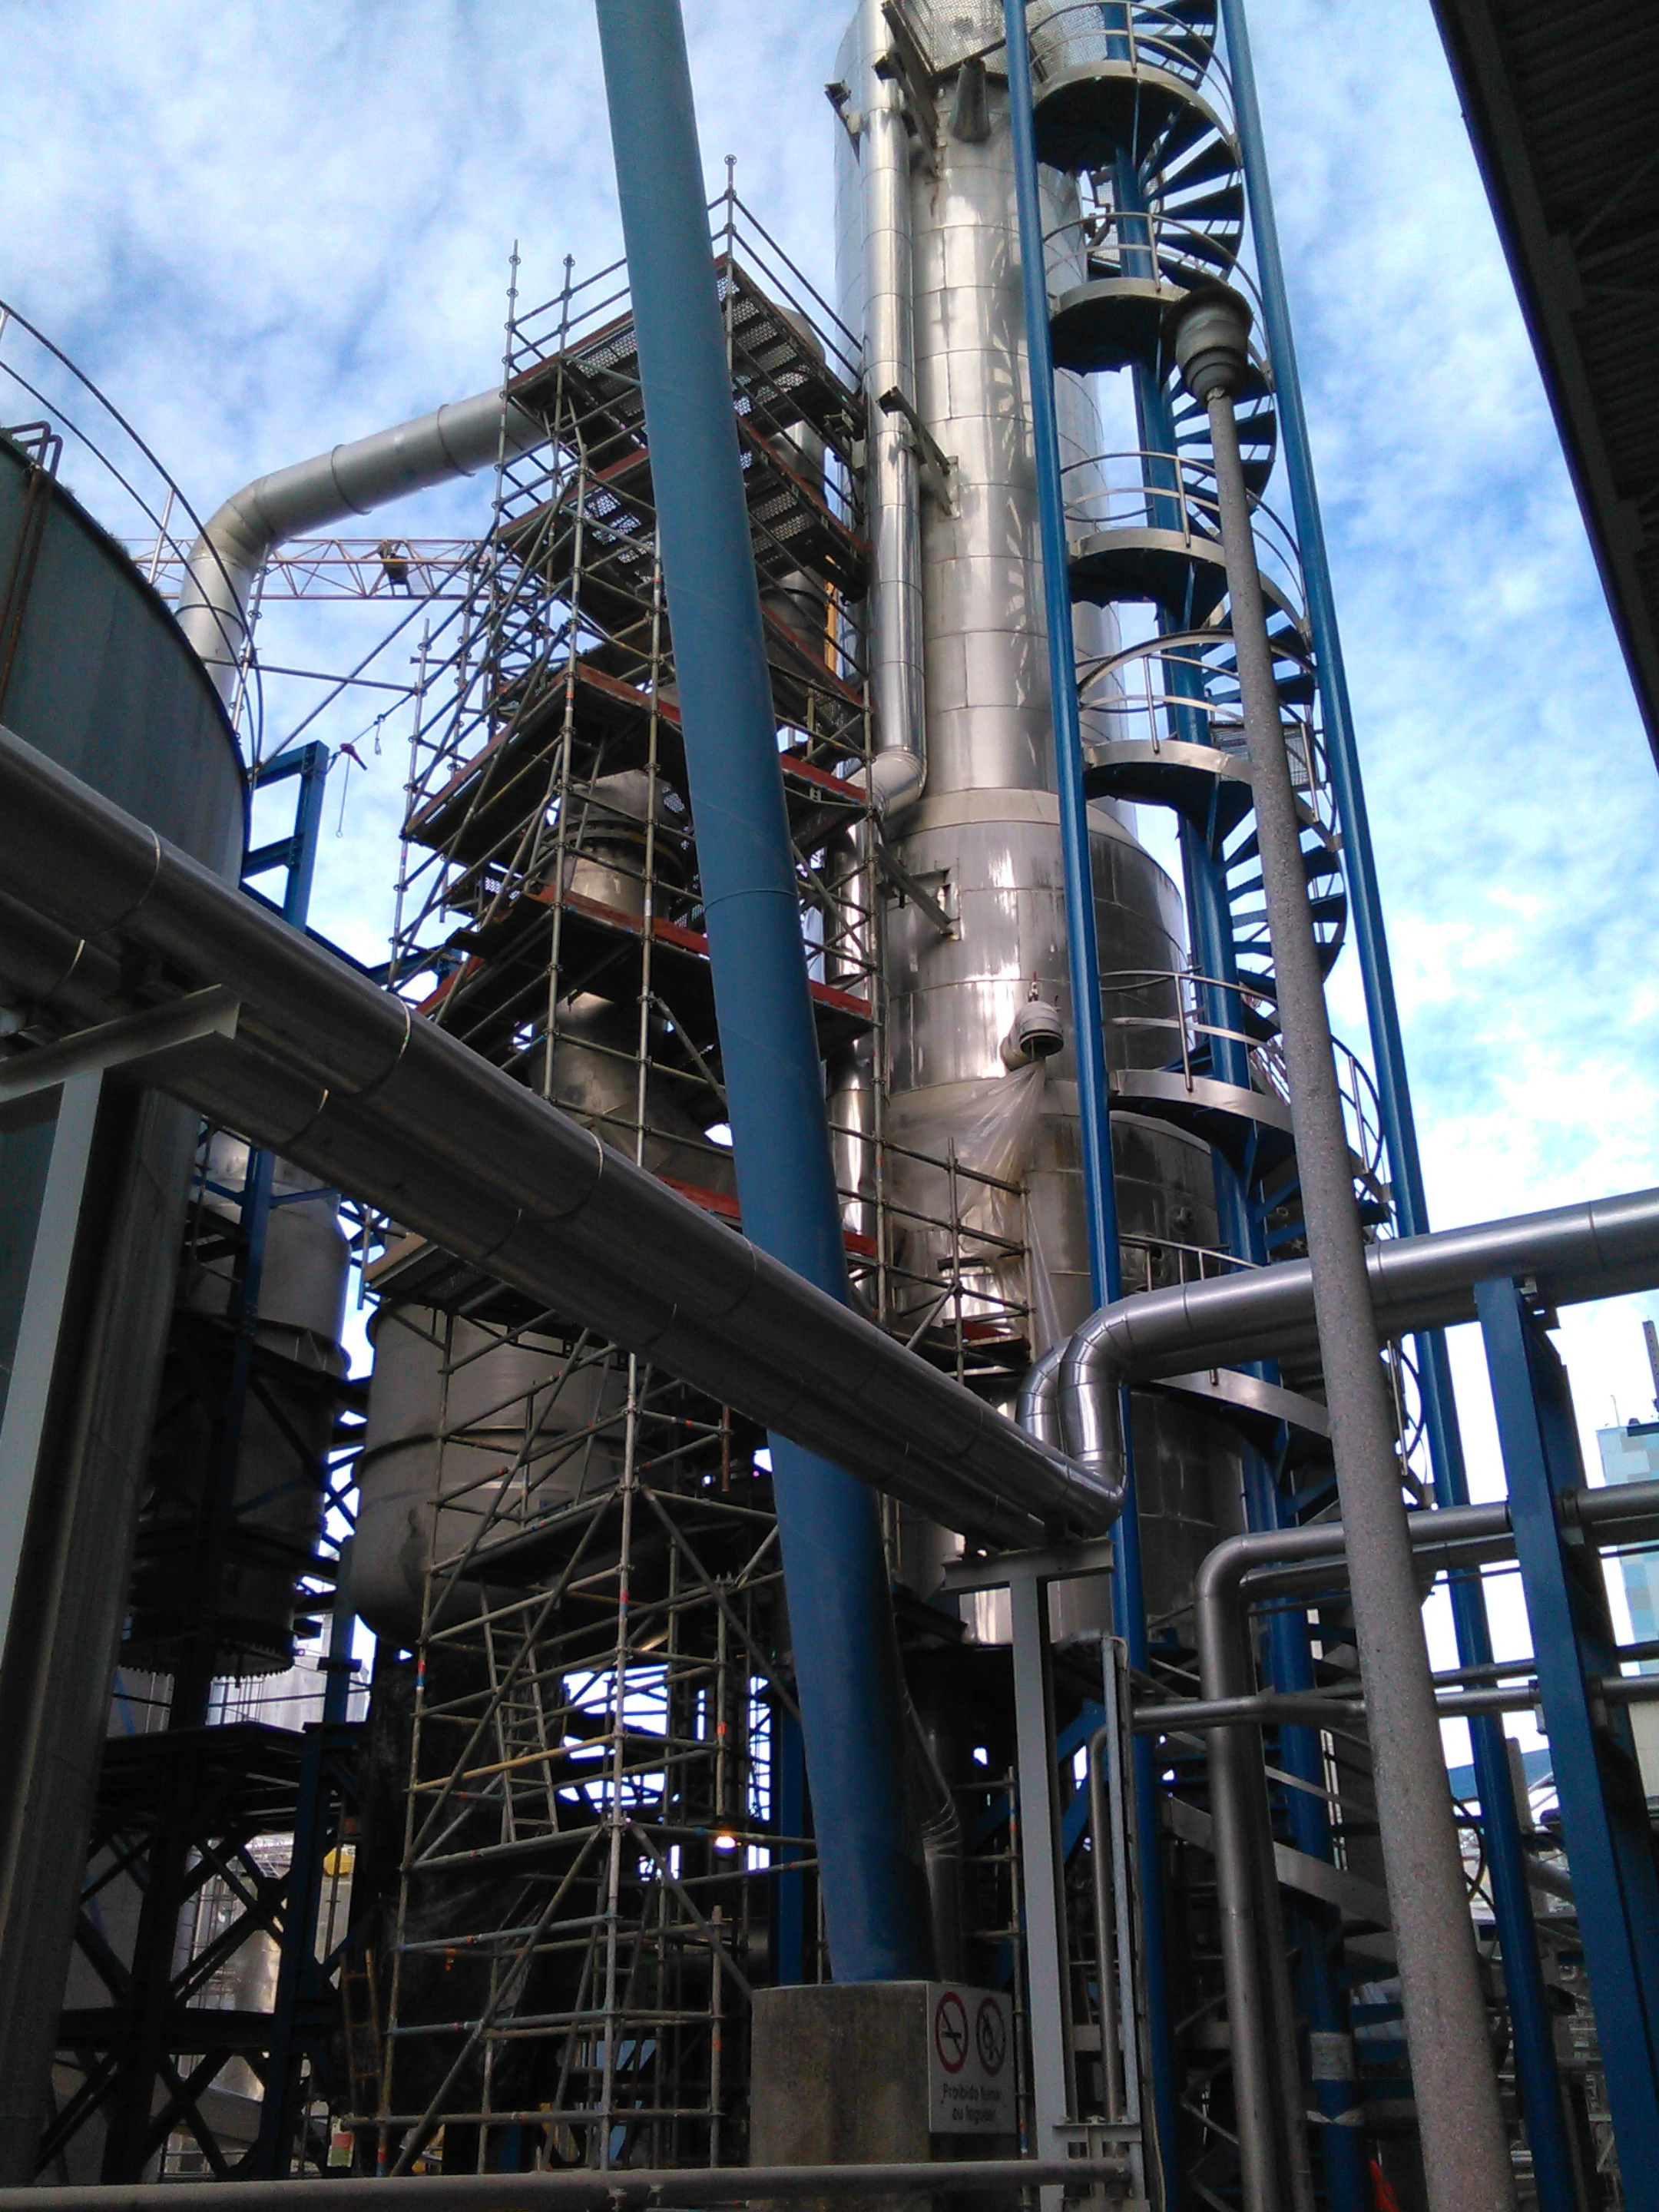 BTL Permutador de calor em aço inoxidável - Indústria Química